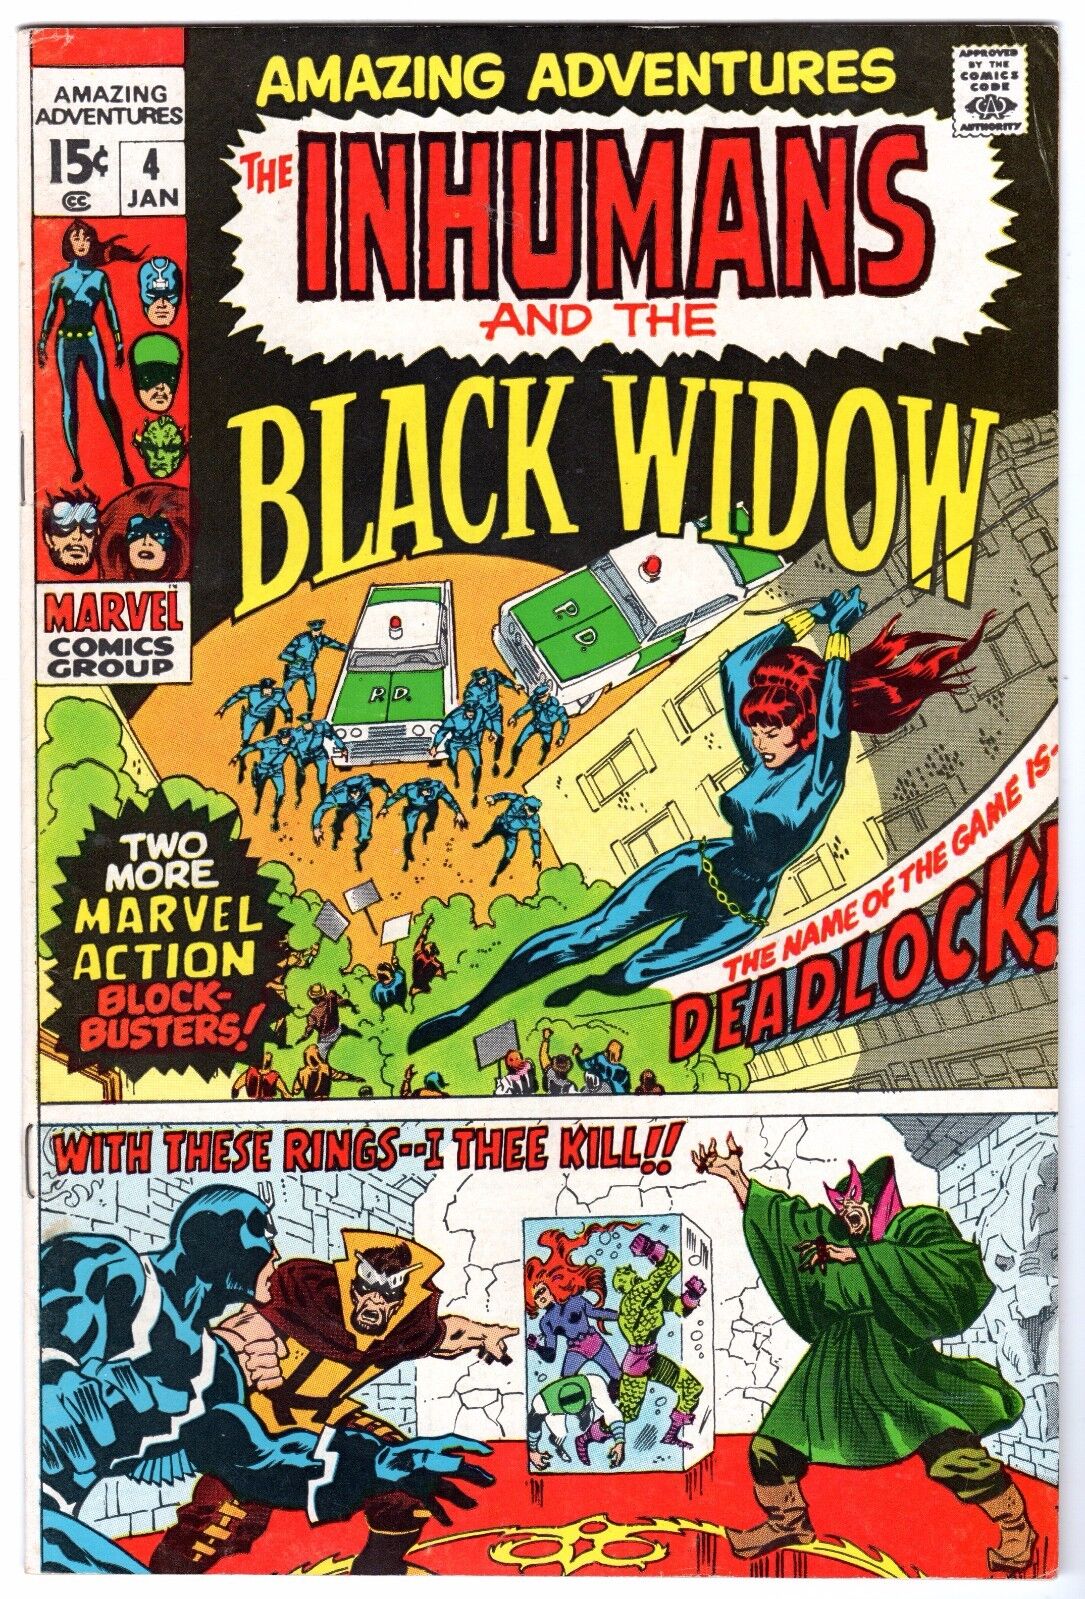 Amazing Adventures #4 featuring Inhumans & Black Widow, Very Fine Condition